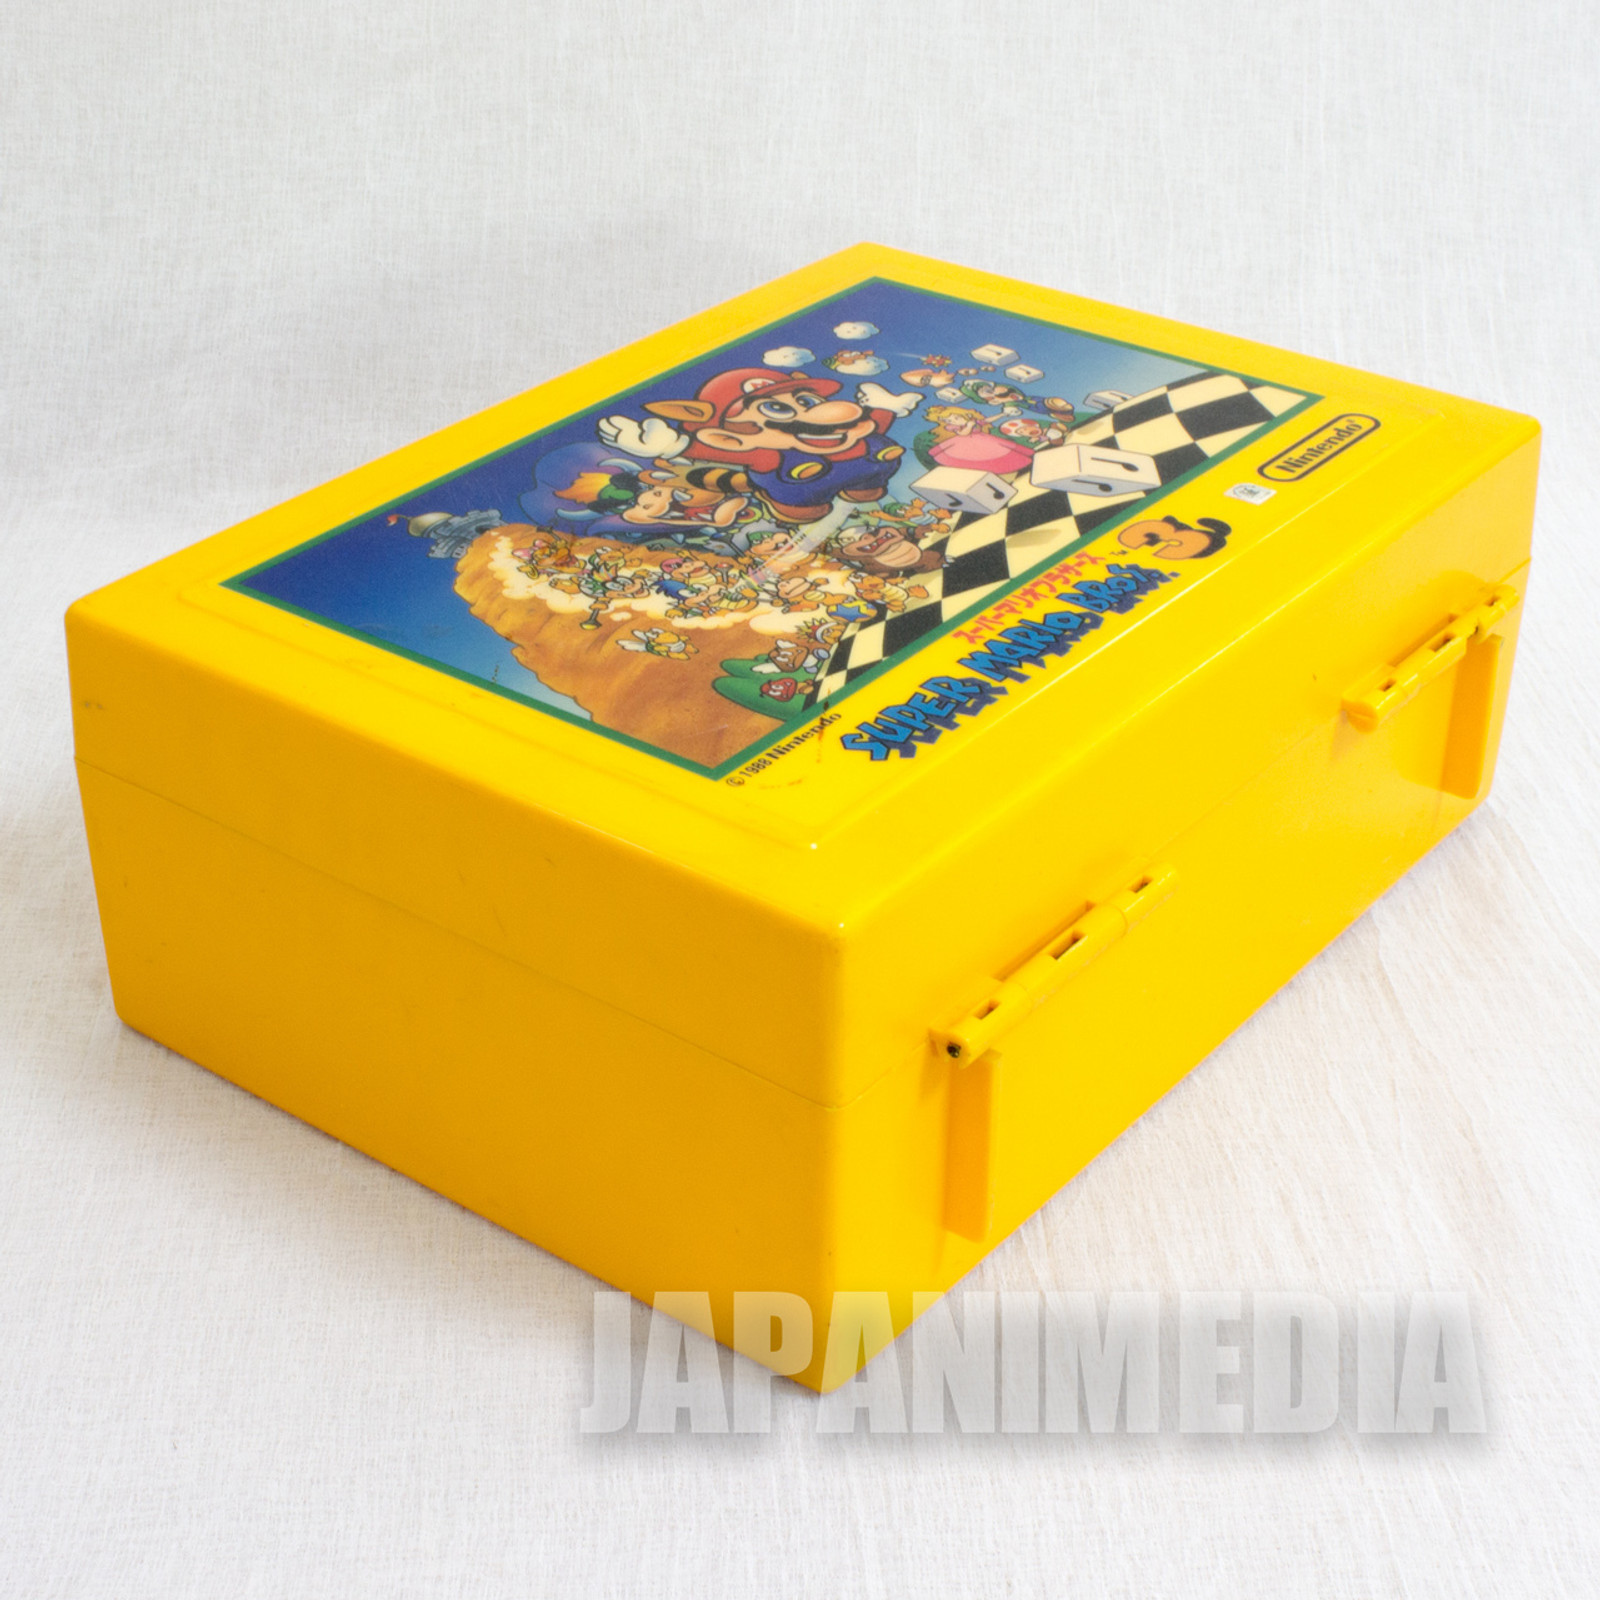 Retro RARE! Super Mario Bros. 3 Plastic Case JAPAN GAME NINTNEDO NES